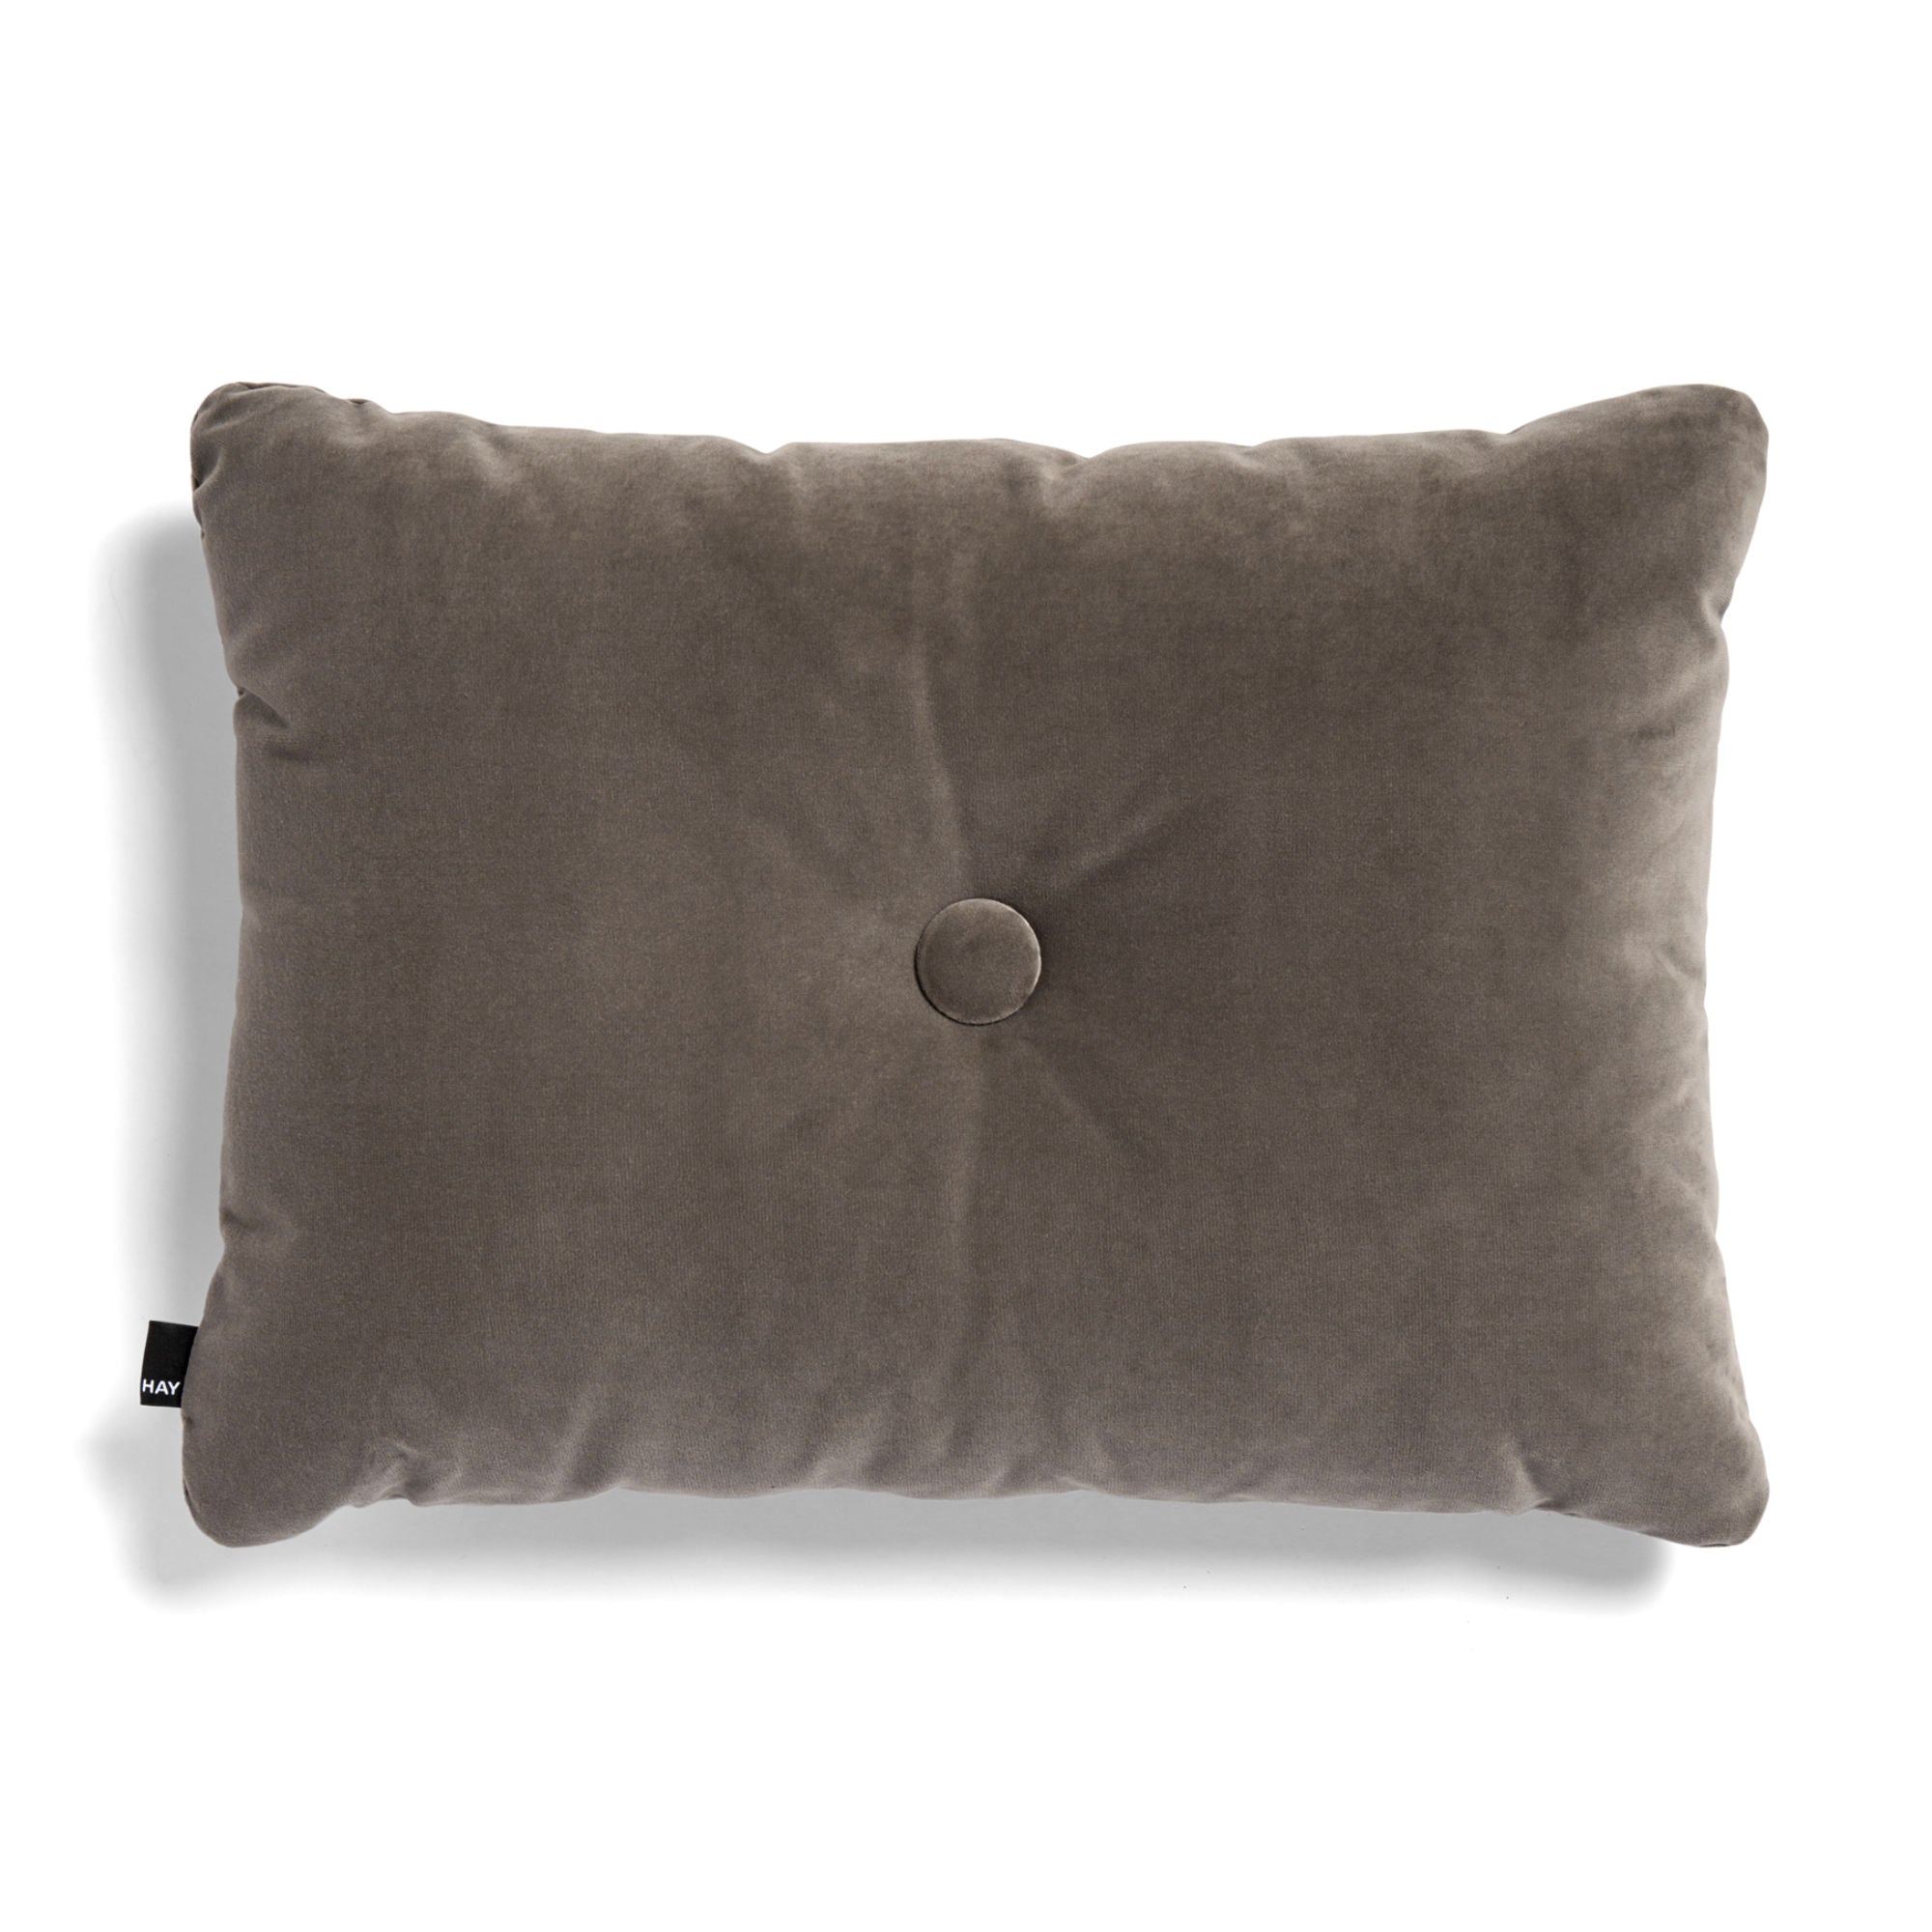 Hay Dot cushion soft, warm grey